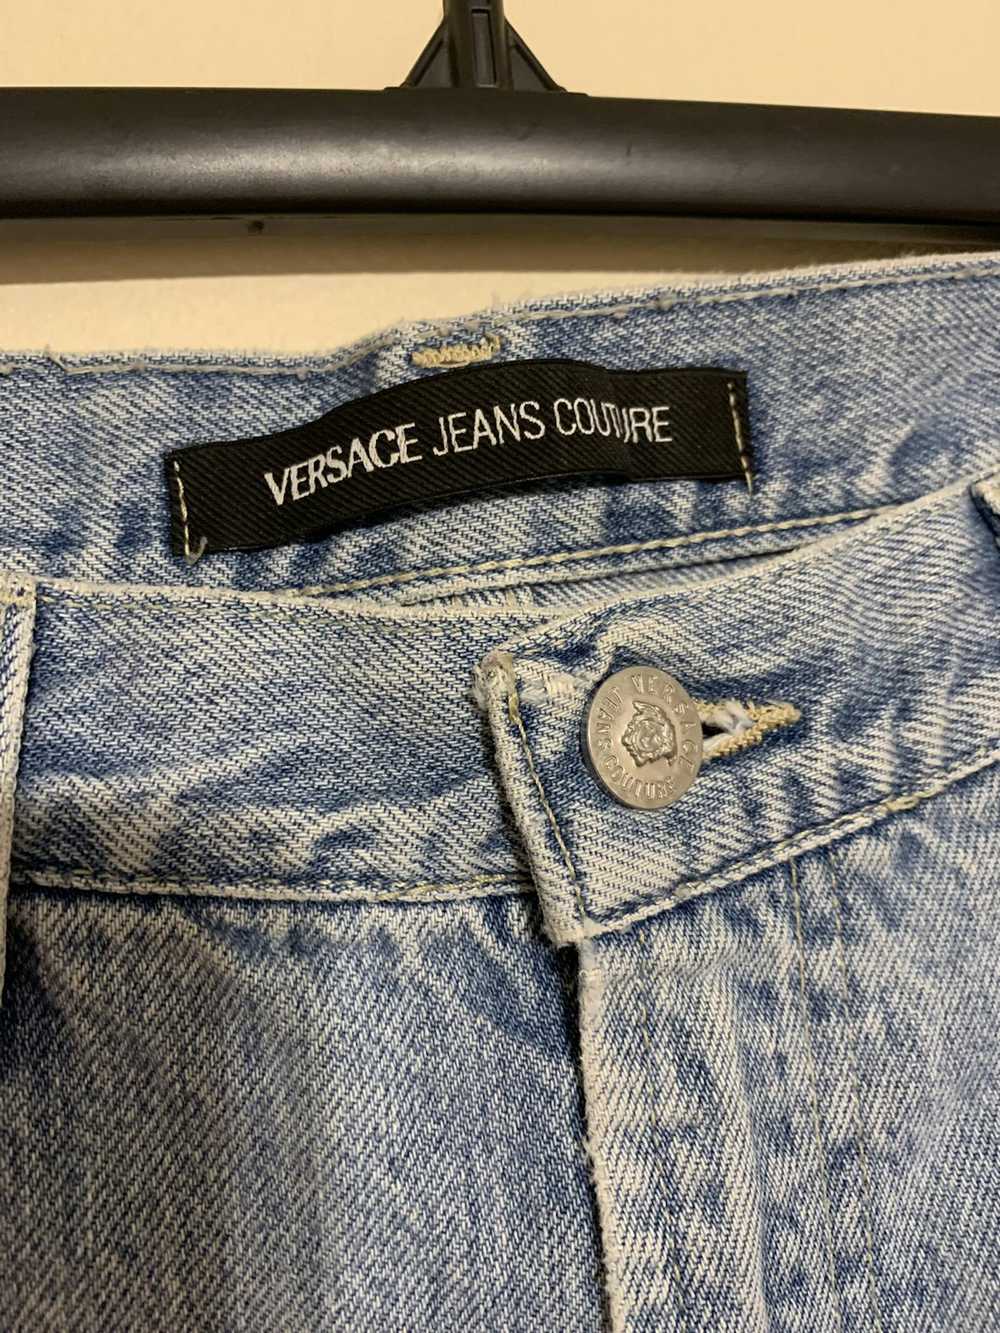 Versace Vintage men’s versace couture jeans - image 2